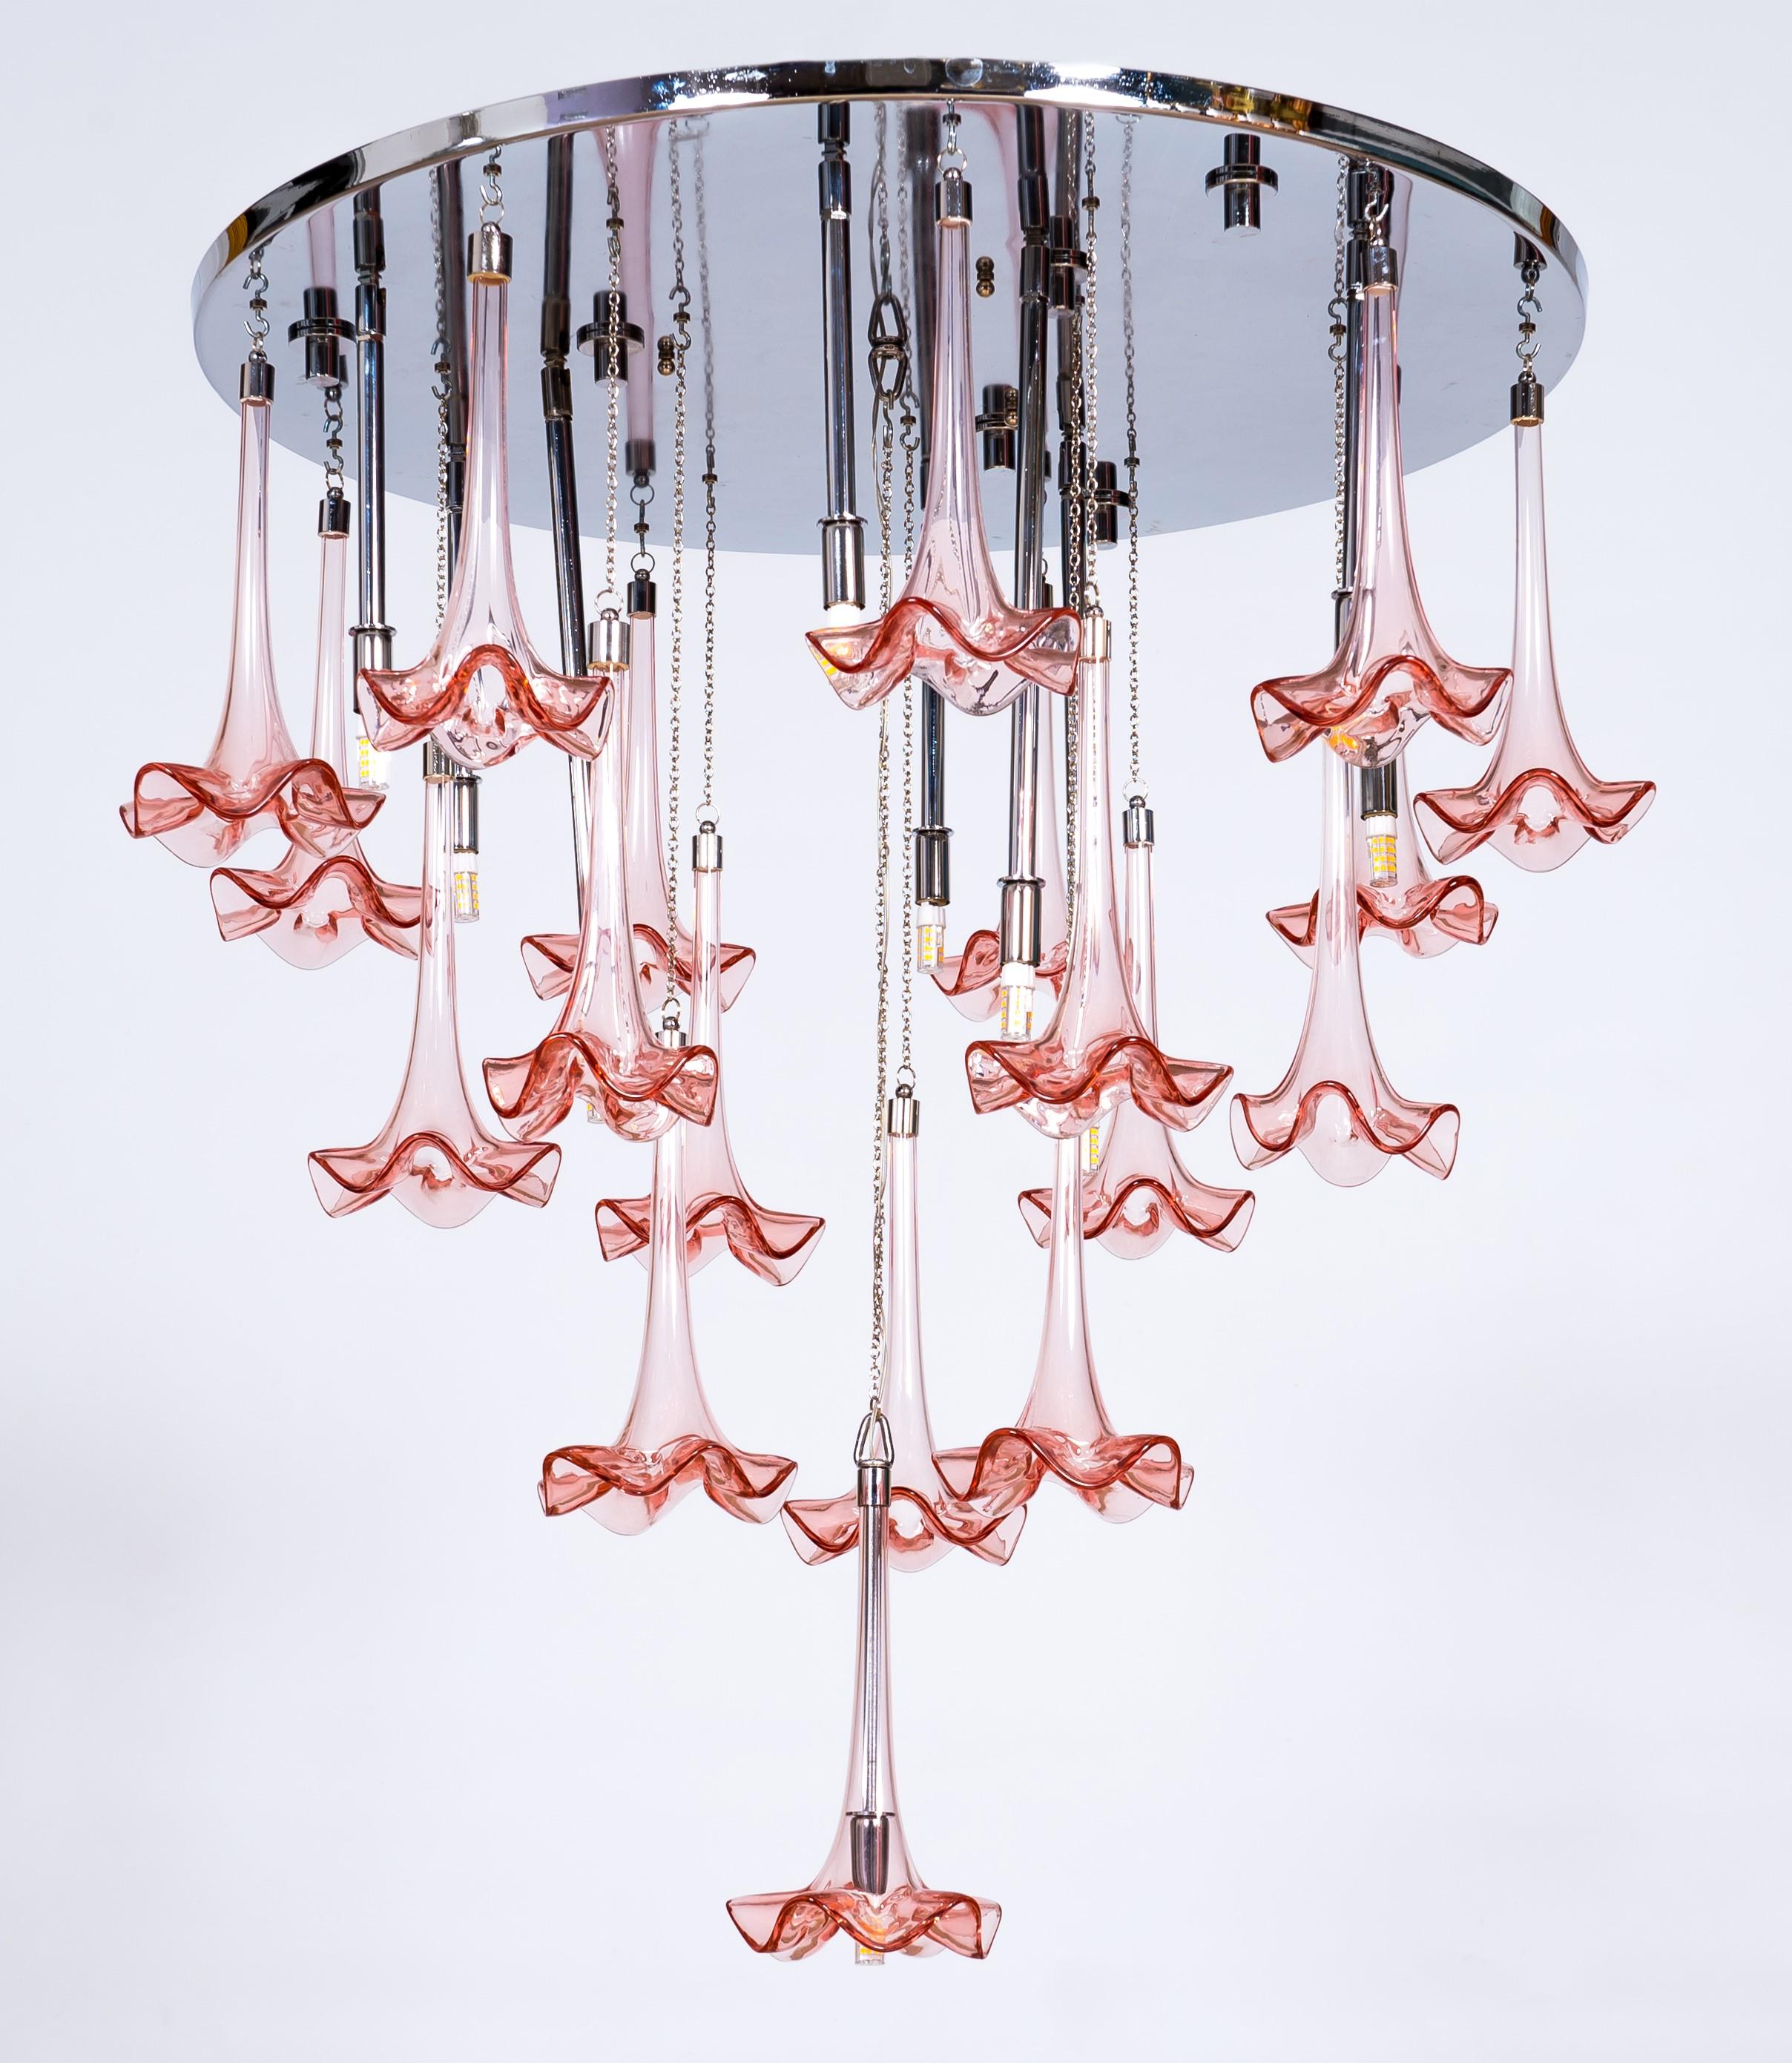 Moderne LED-Murano-Glashalterung mit rosa Blumen von Giovanni Dalla Fina
Schöner und stilisierter Kronleuchter mit einer Kaskade von rosa Blumen, die von einem runden, verchromten, glänzenden Rahmen hängen, der das Licht reflektiert. Die Ränder der